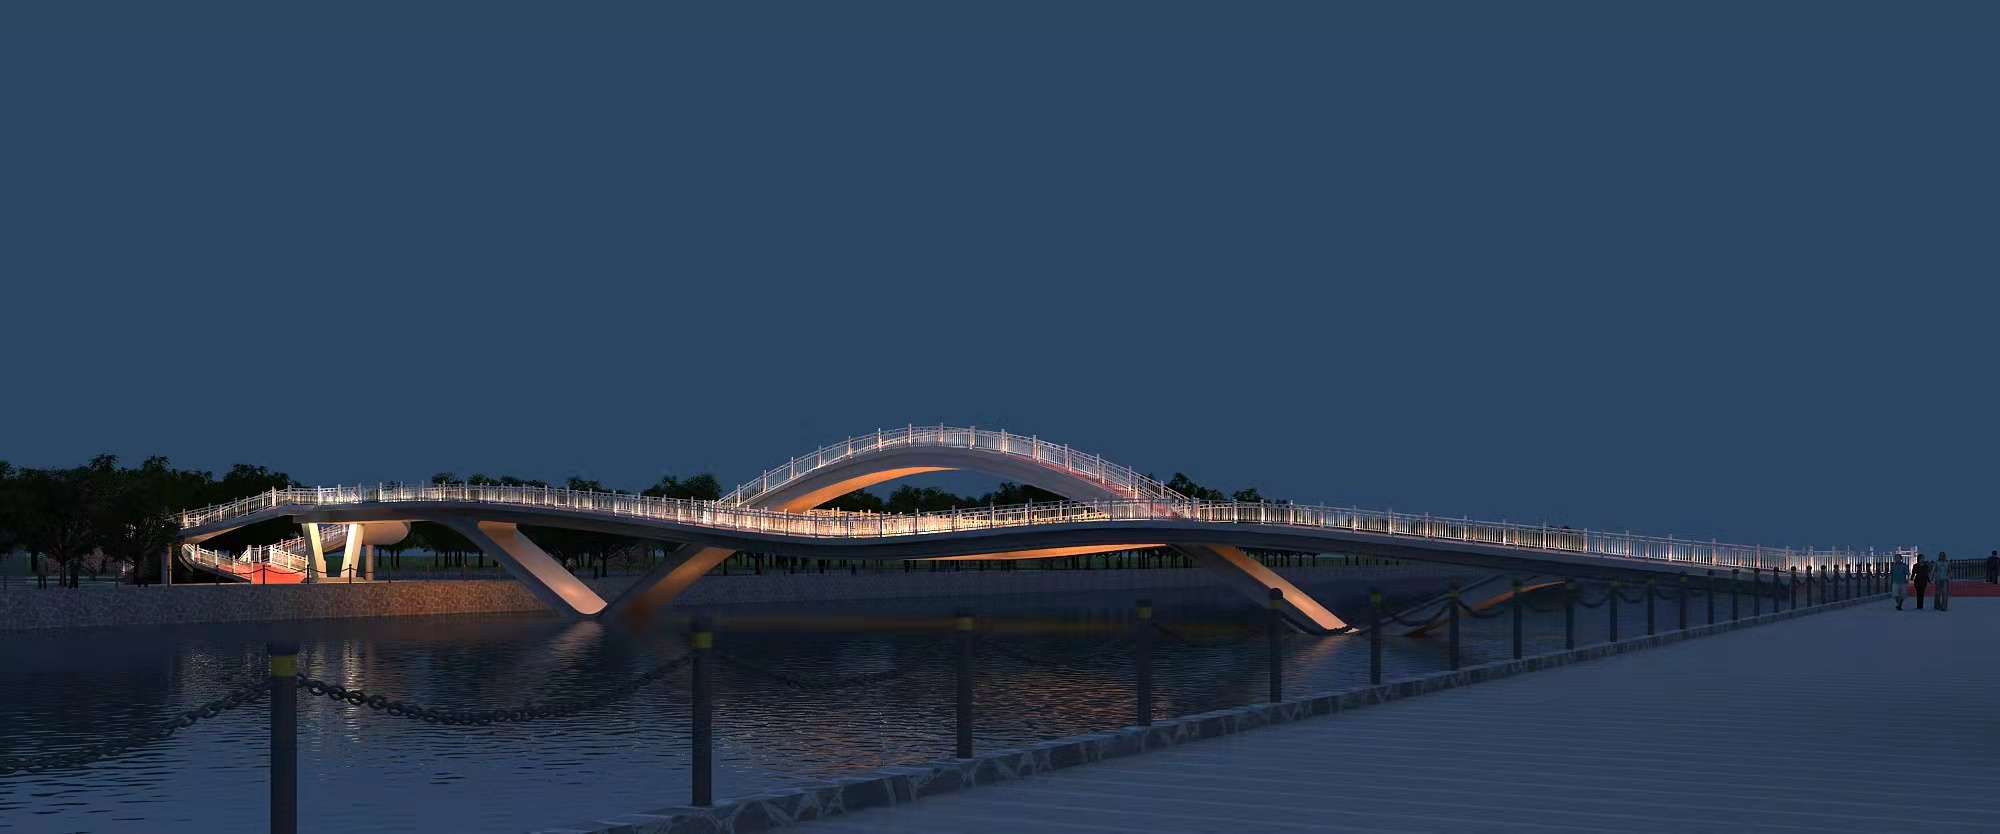 大跨度桥梁-武乡县马牧河跨河大桥项目